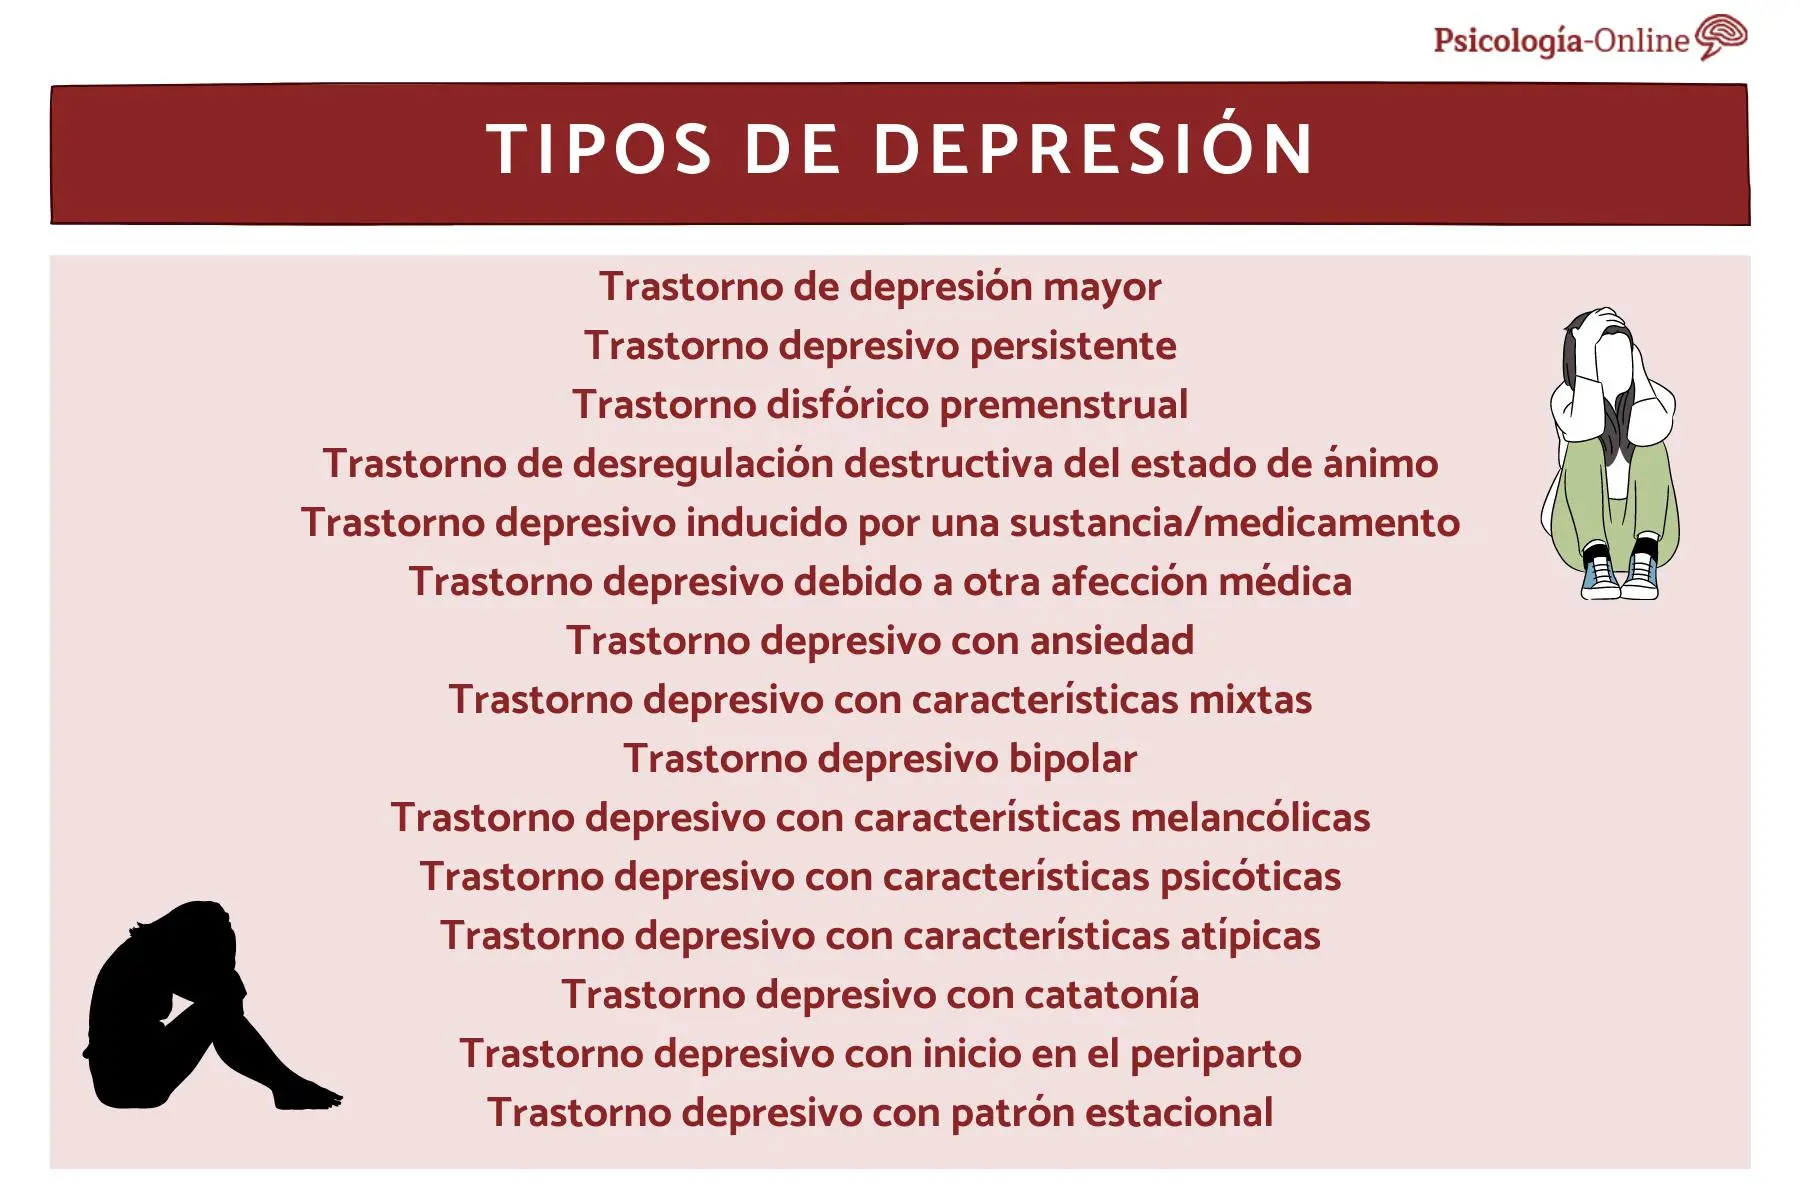 psicologos que hablan de la depresion - Qué filósofo habla de la depresión